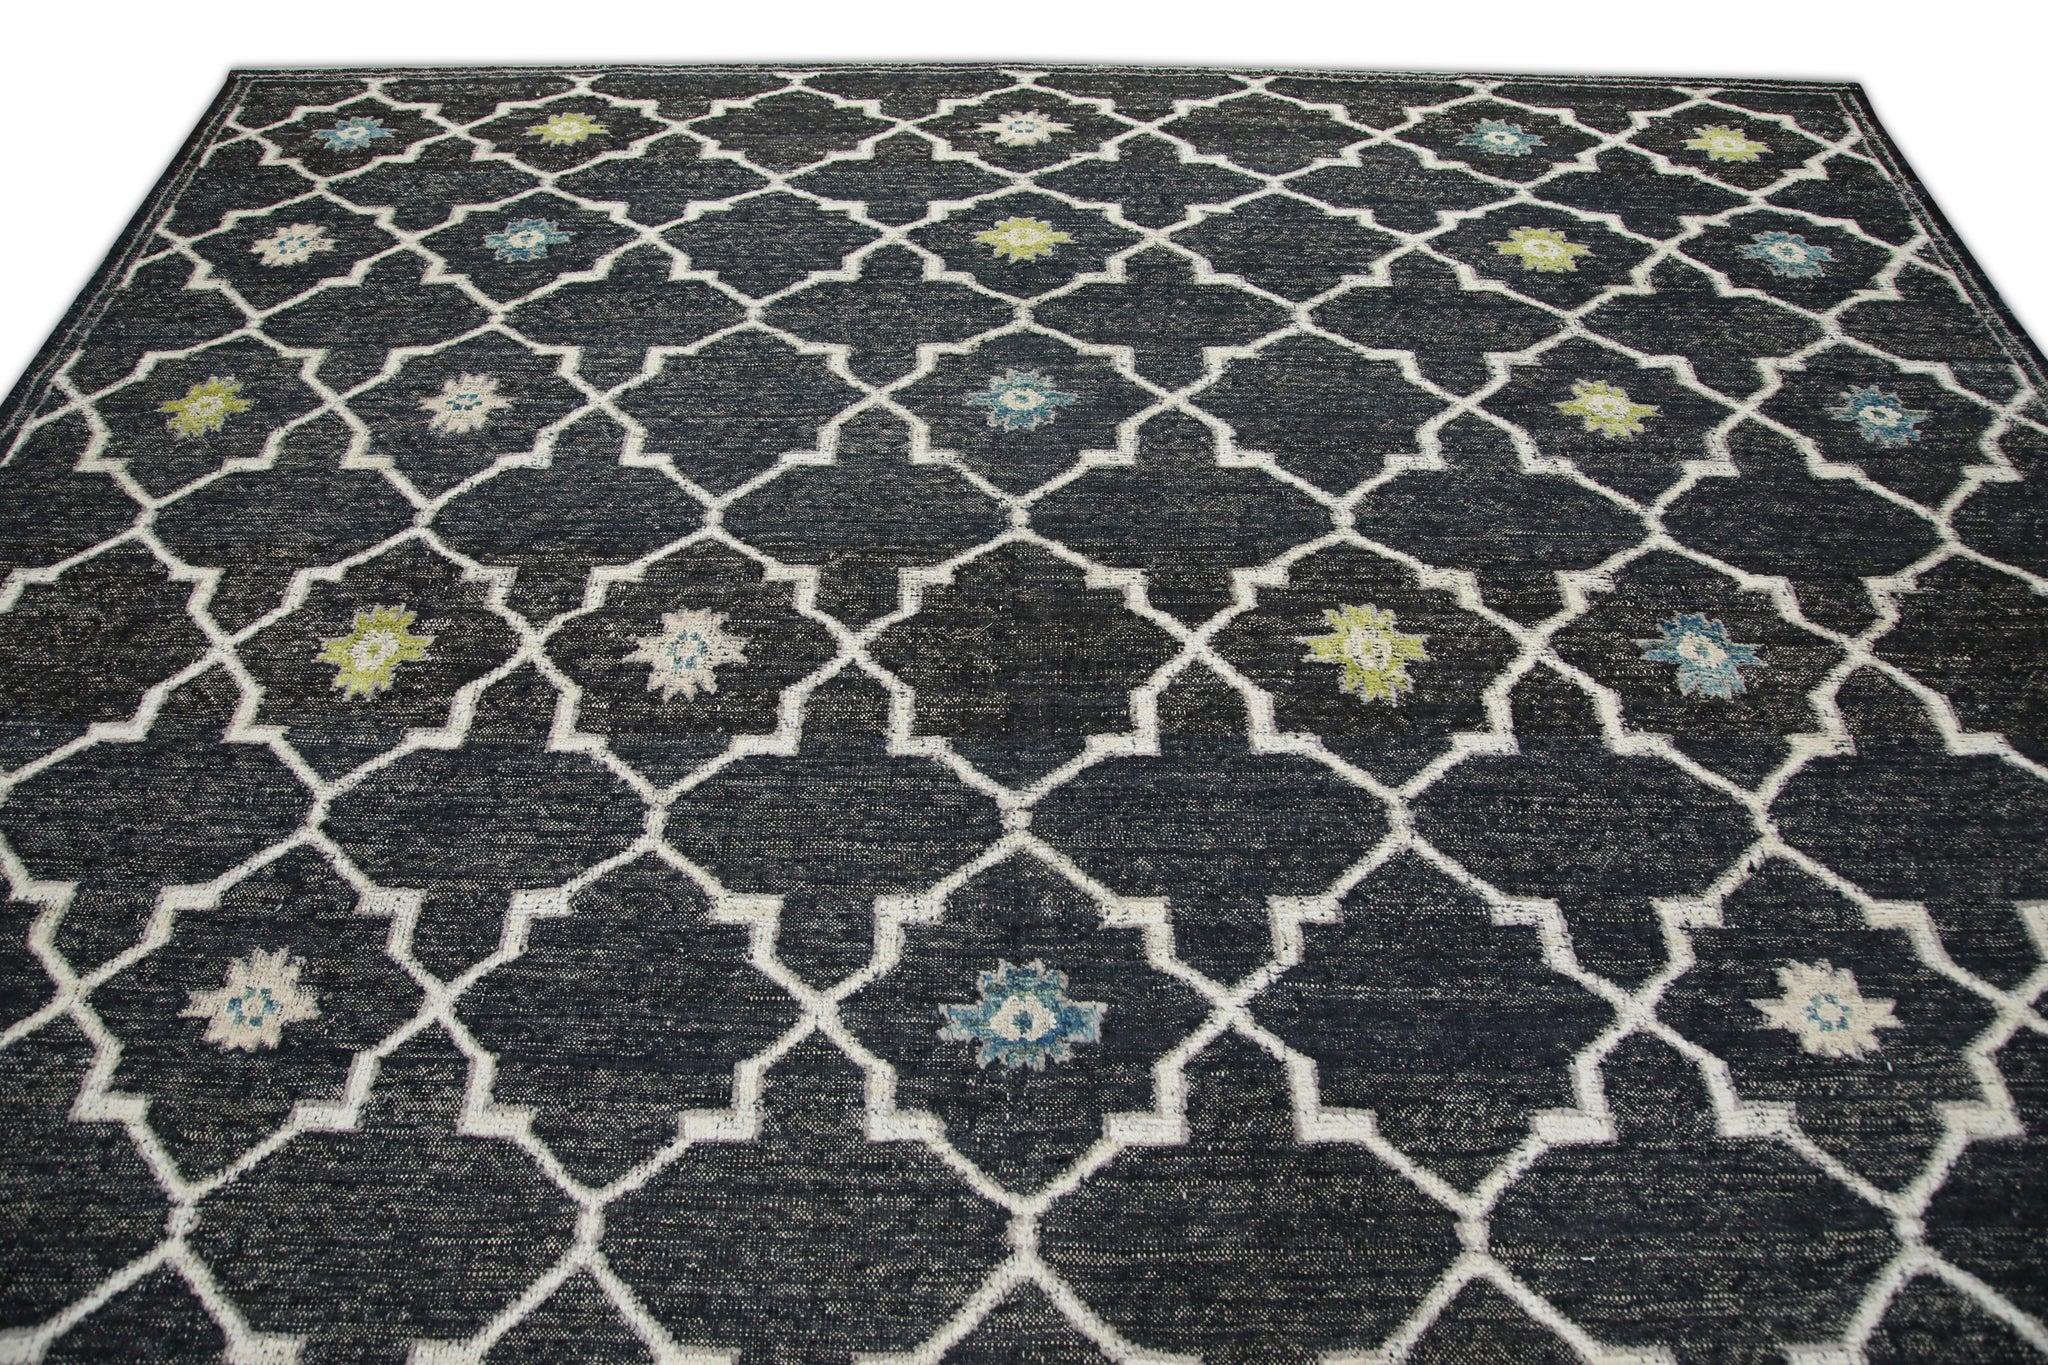 Charcoal Flatweave Handmade Wool Rug in Blue & Green Geometric Design 10' X 12'4 For Sale 1